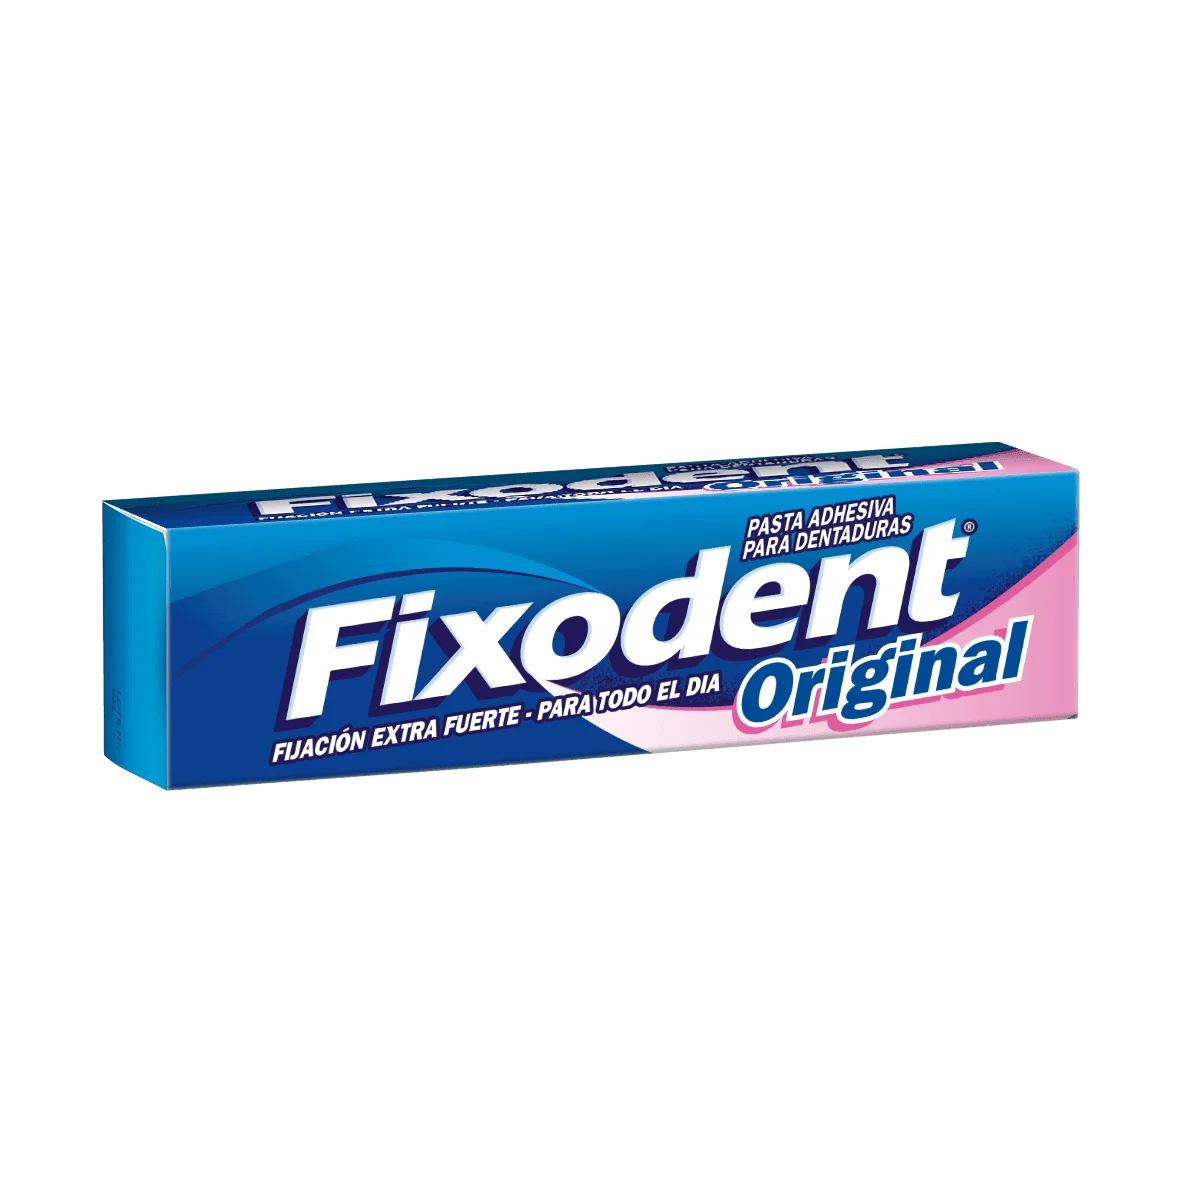 Cemento dental farmacia. Comprar pegamento dentadura